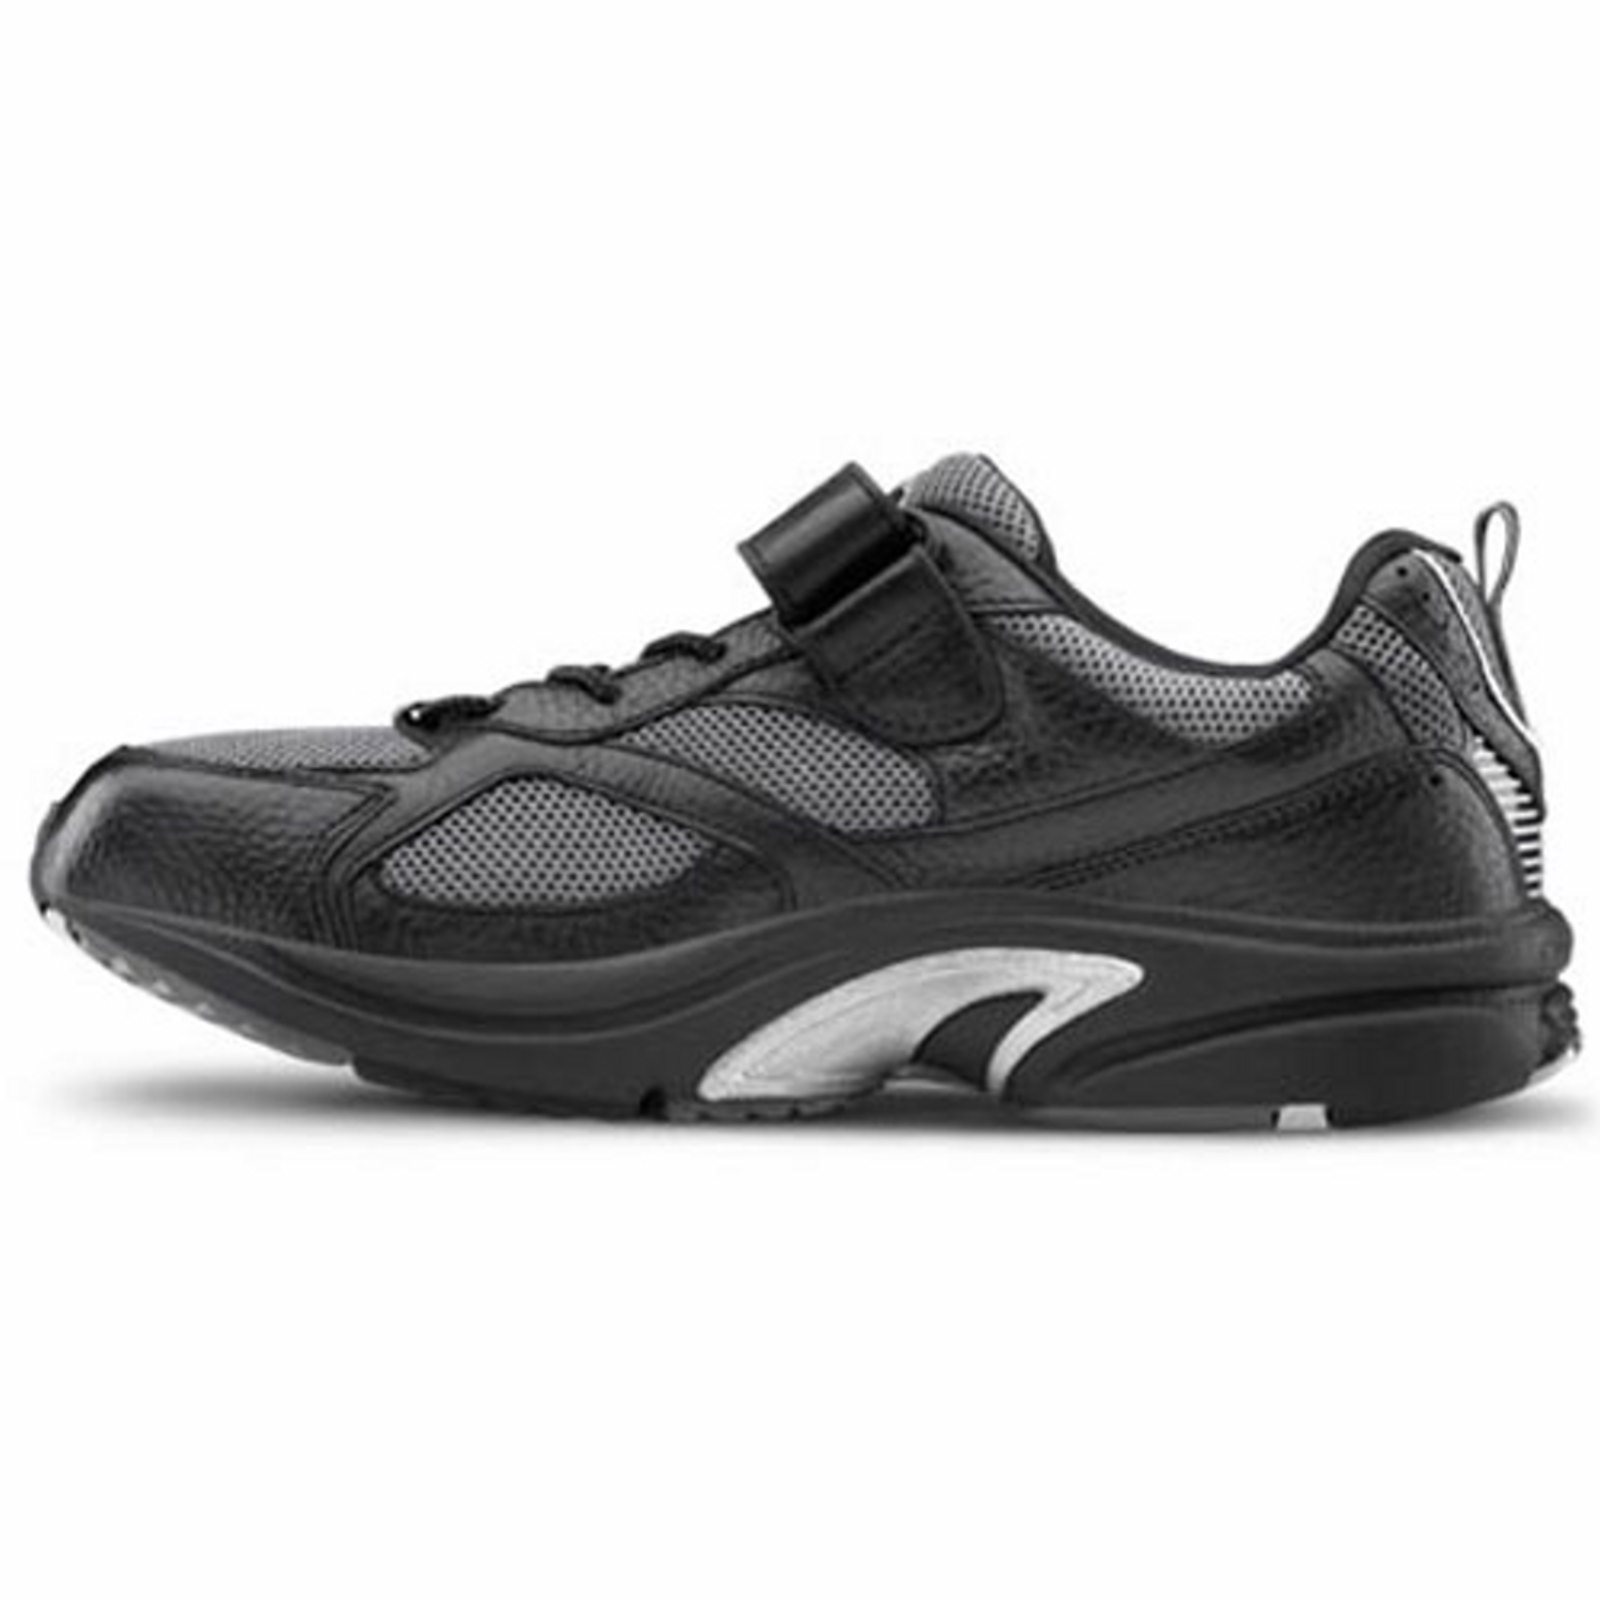 Dr. Comfort Endurance Men's Athletic Shoe: 12 Wide (E/2E) Black Elastic Lace w/Strap - image 4 of 5